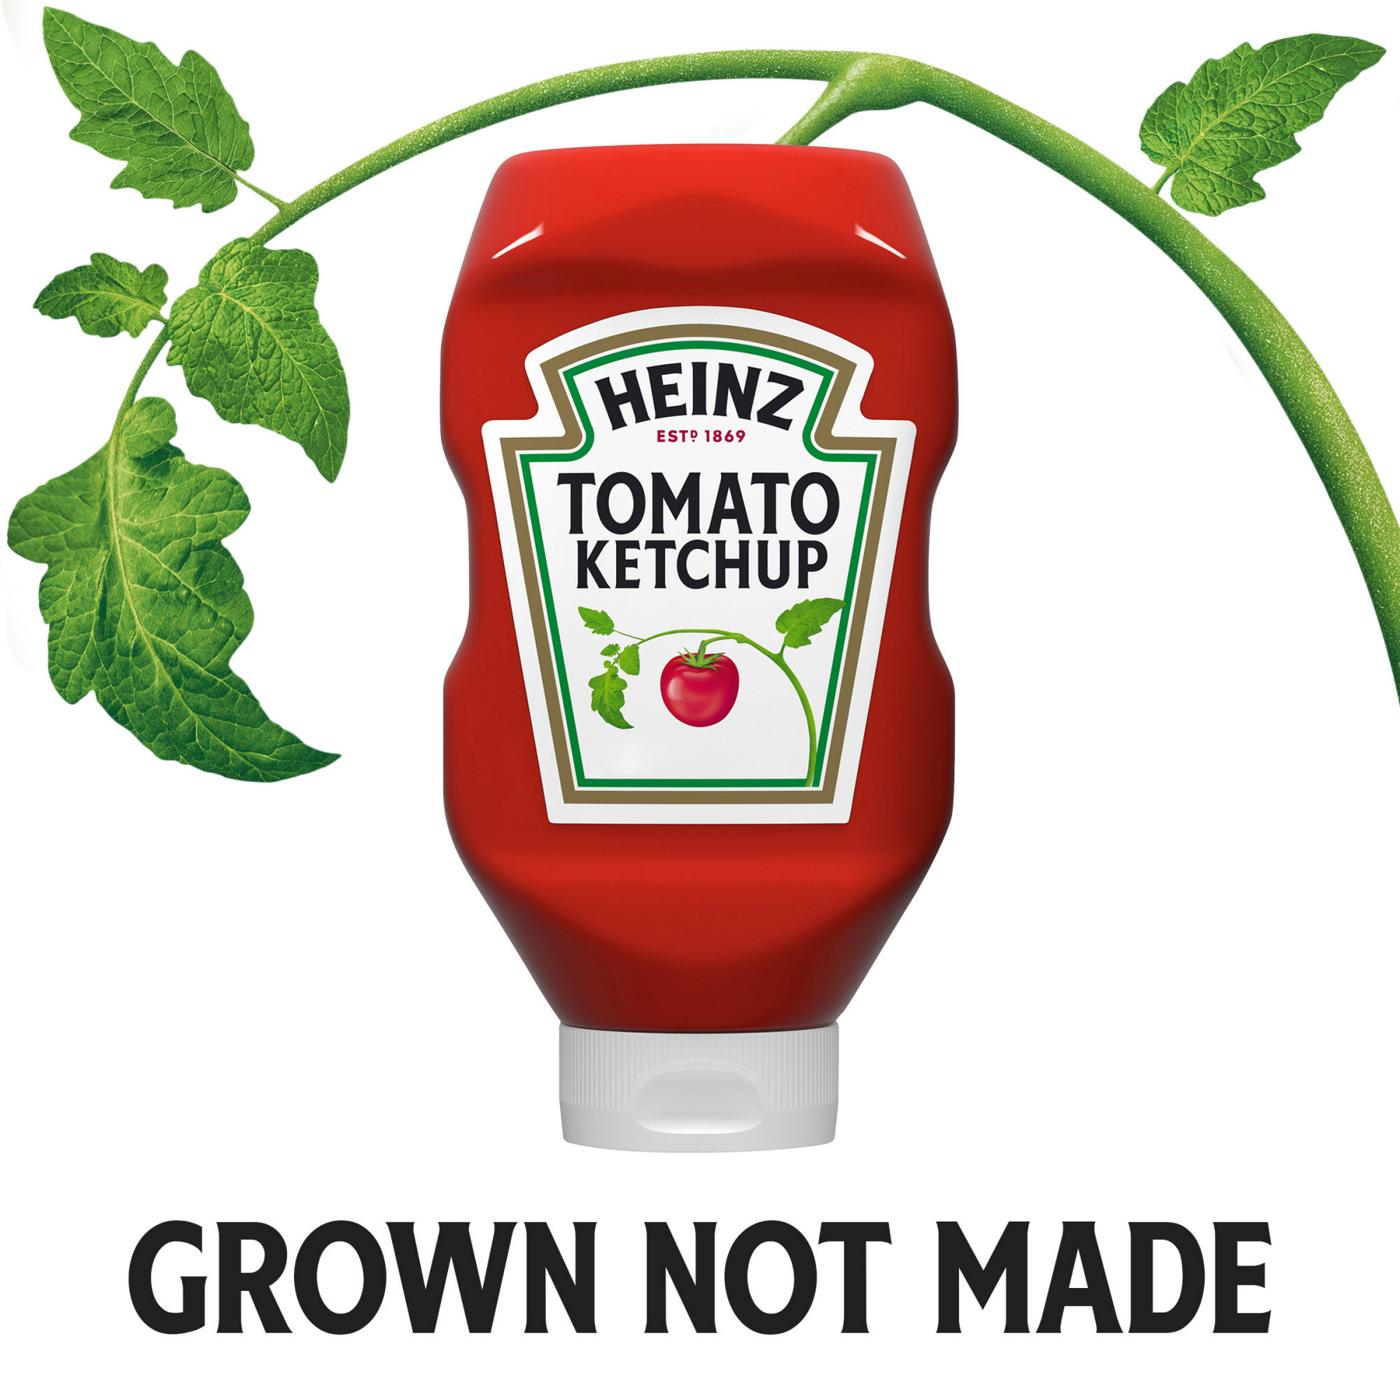 Heinz Tomato Ketchup; image 3 of 7